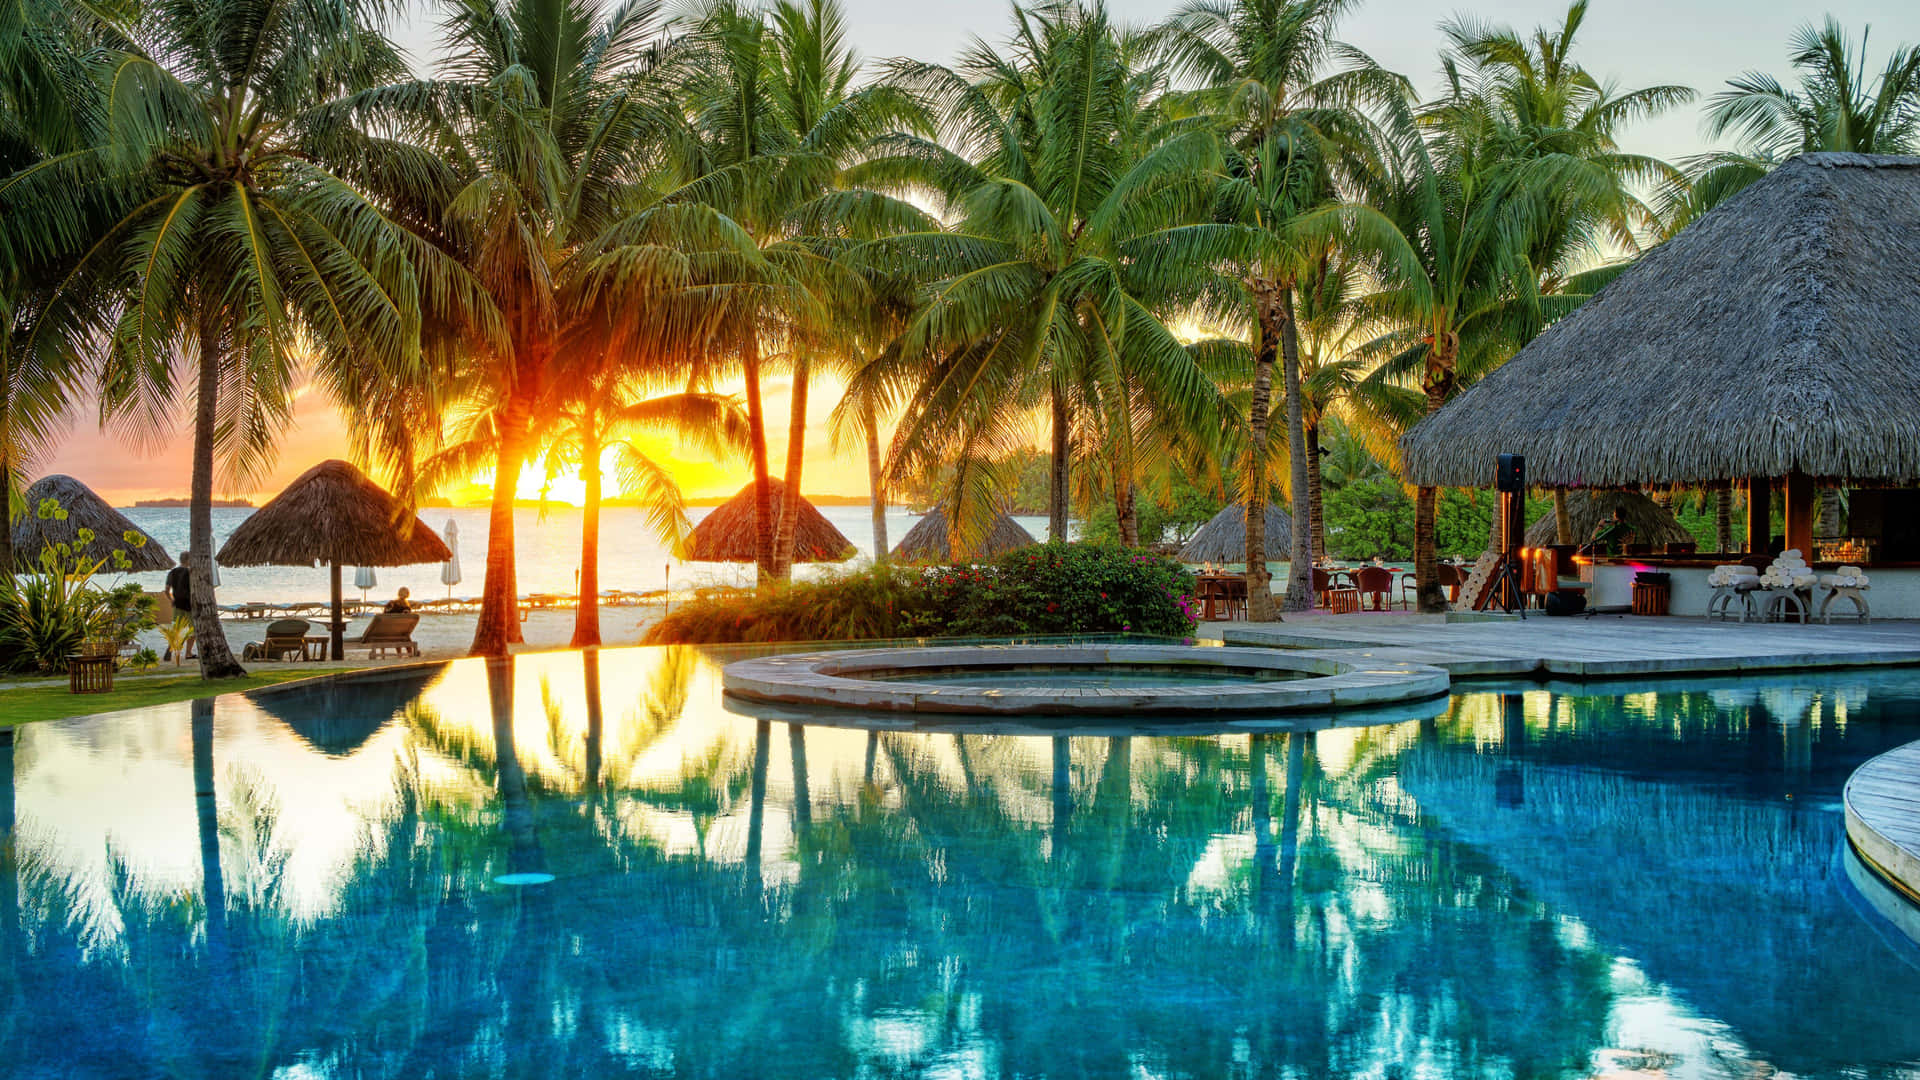 En pool med palmer og et solnedgang spejlet i vandet.